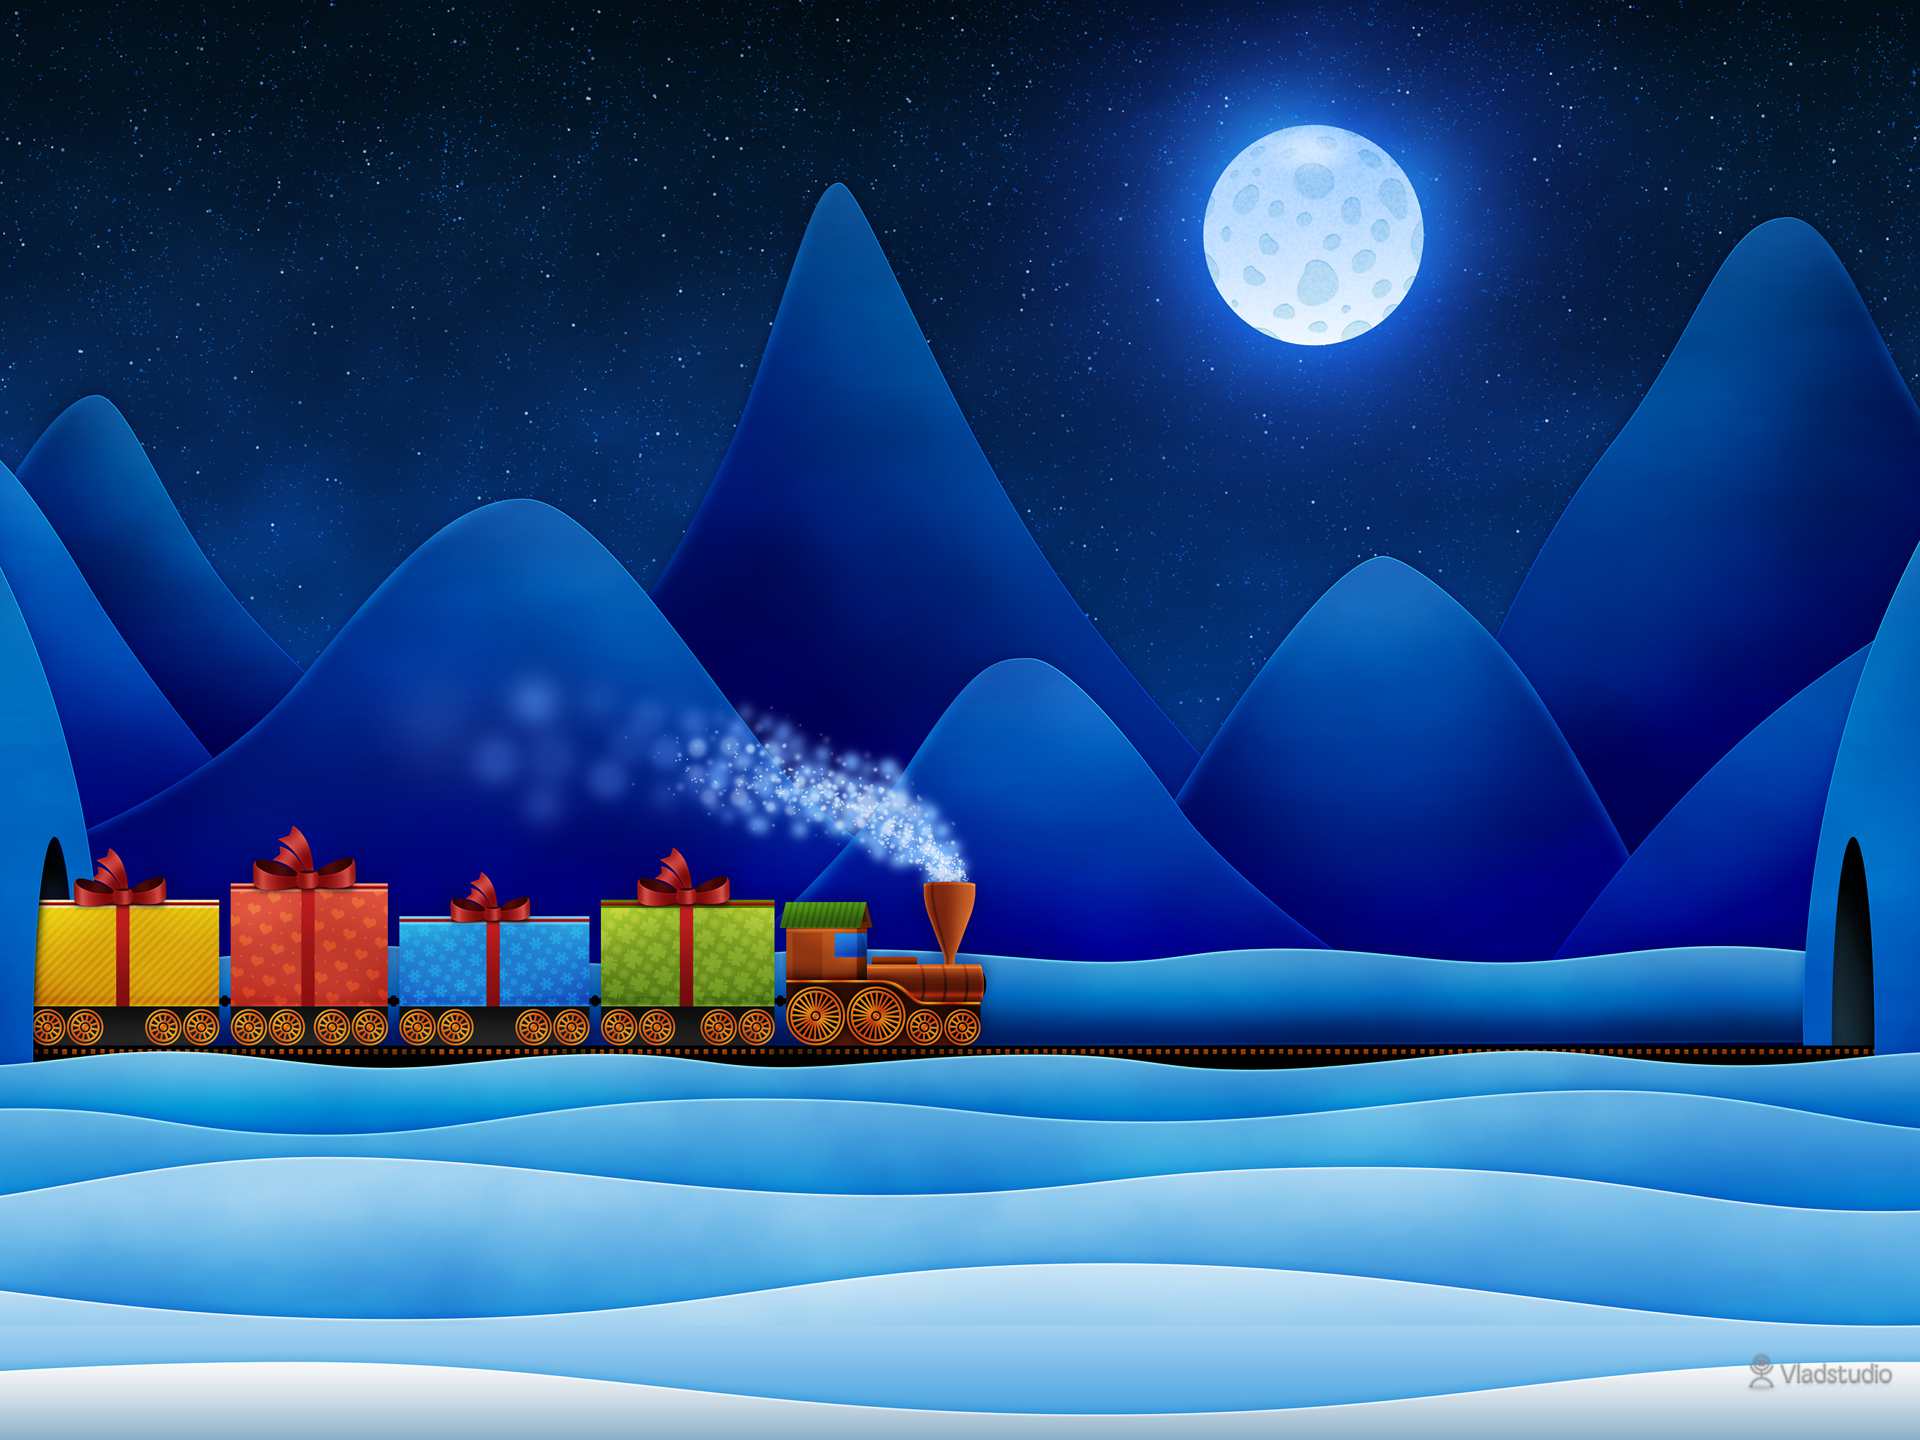 Papel de parede de Natal grátis com a ilustração de um trem carregando presentes